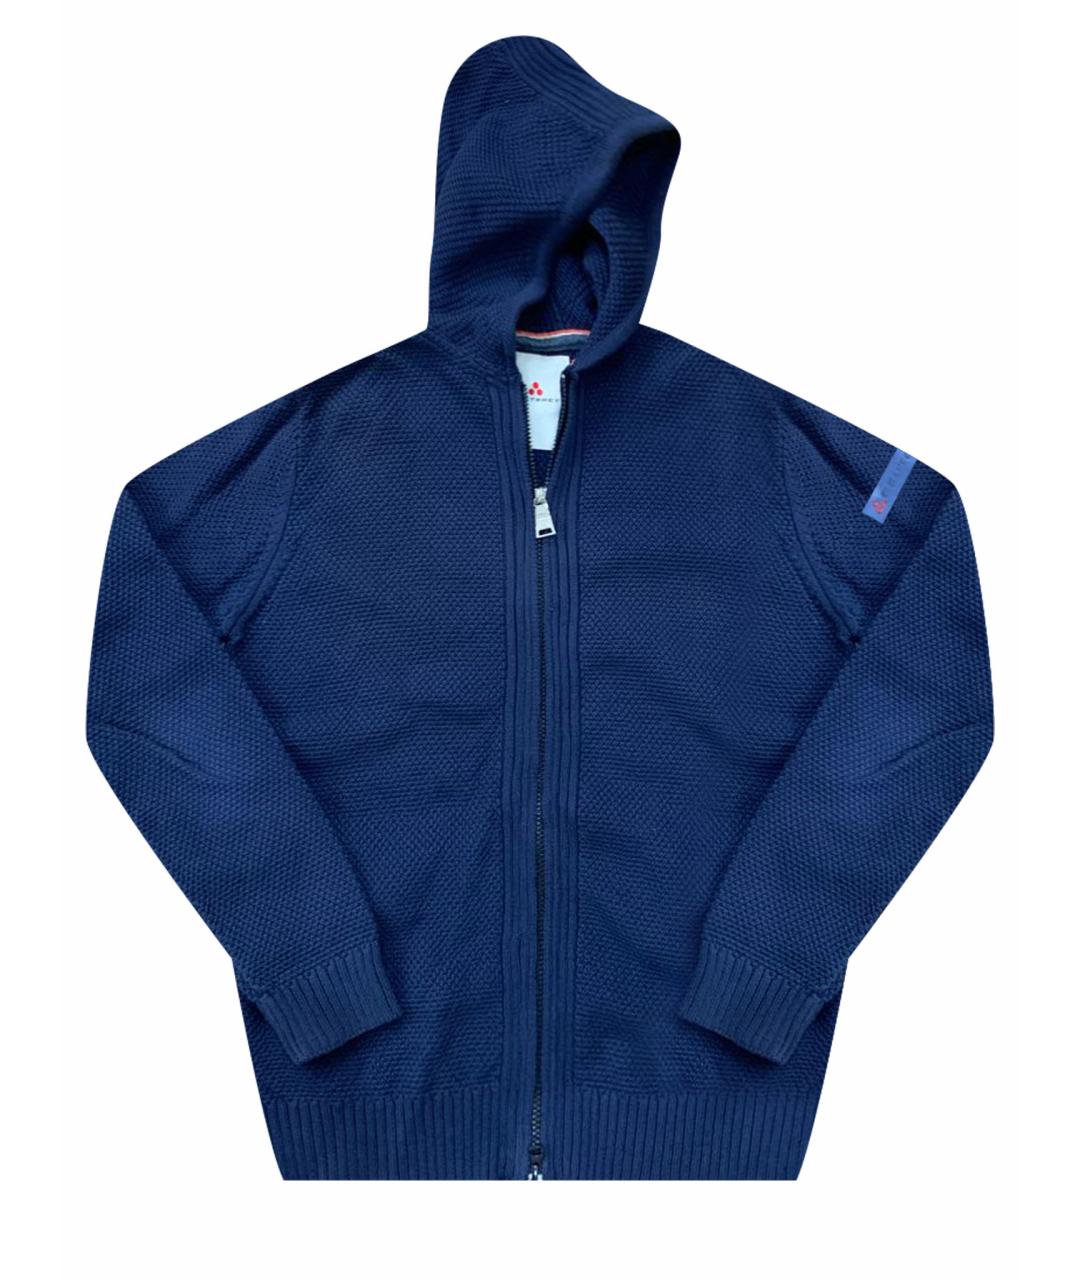 PEUTEREY Синий хлопковый джемпер / свитер, фото 1